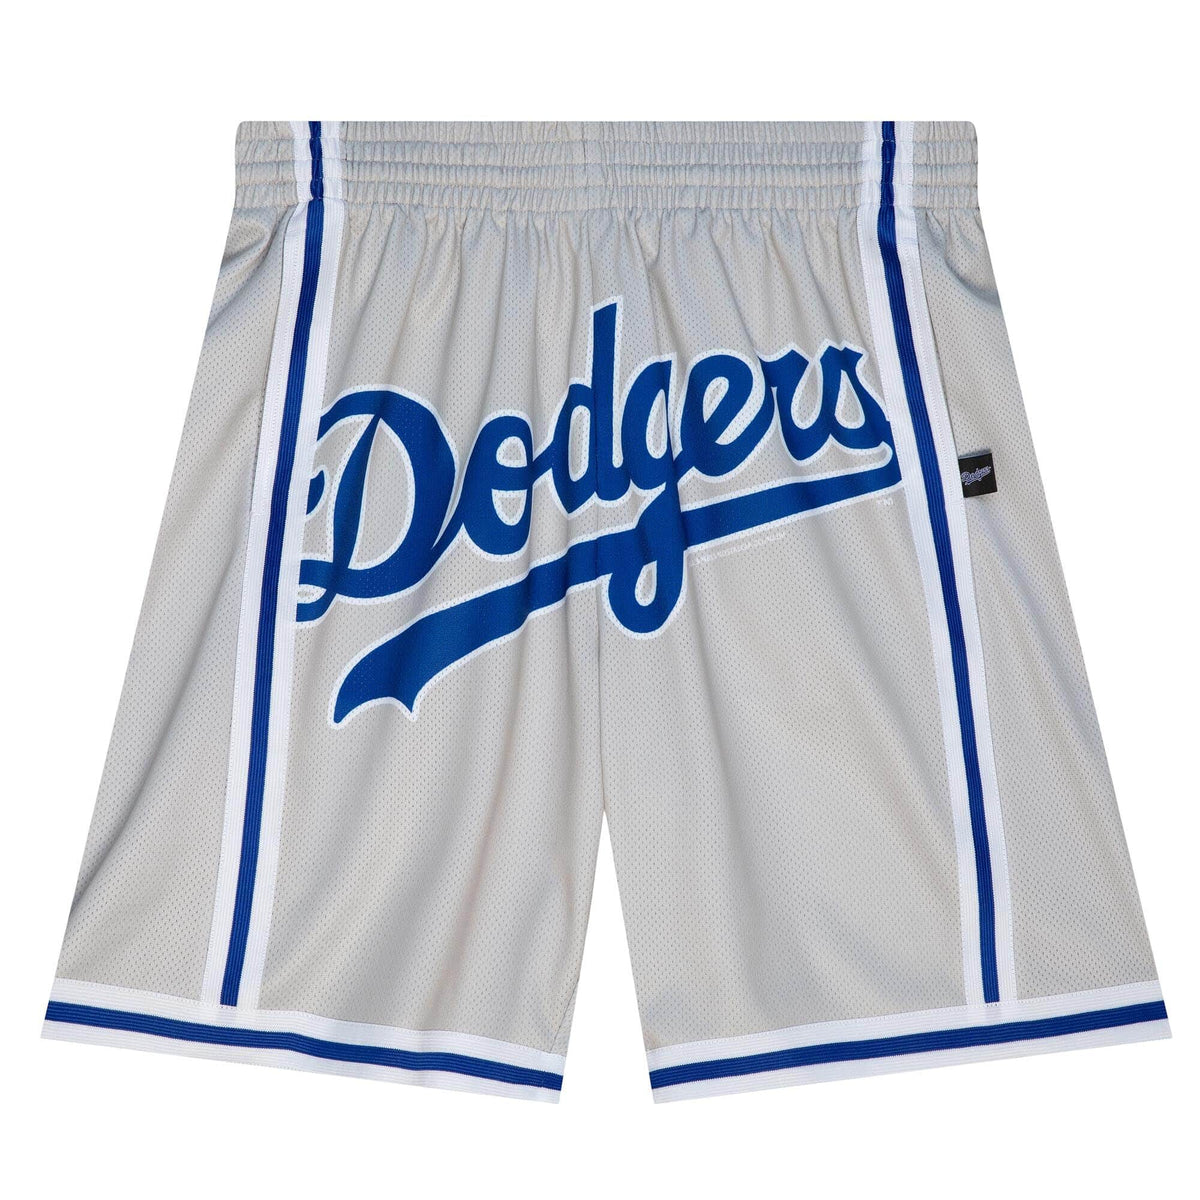 la dodgers shorts